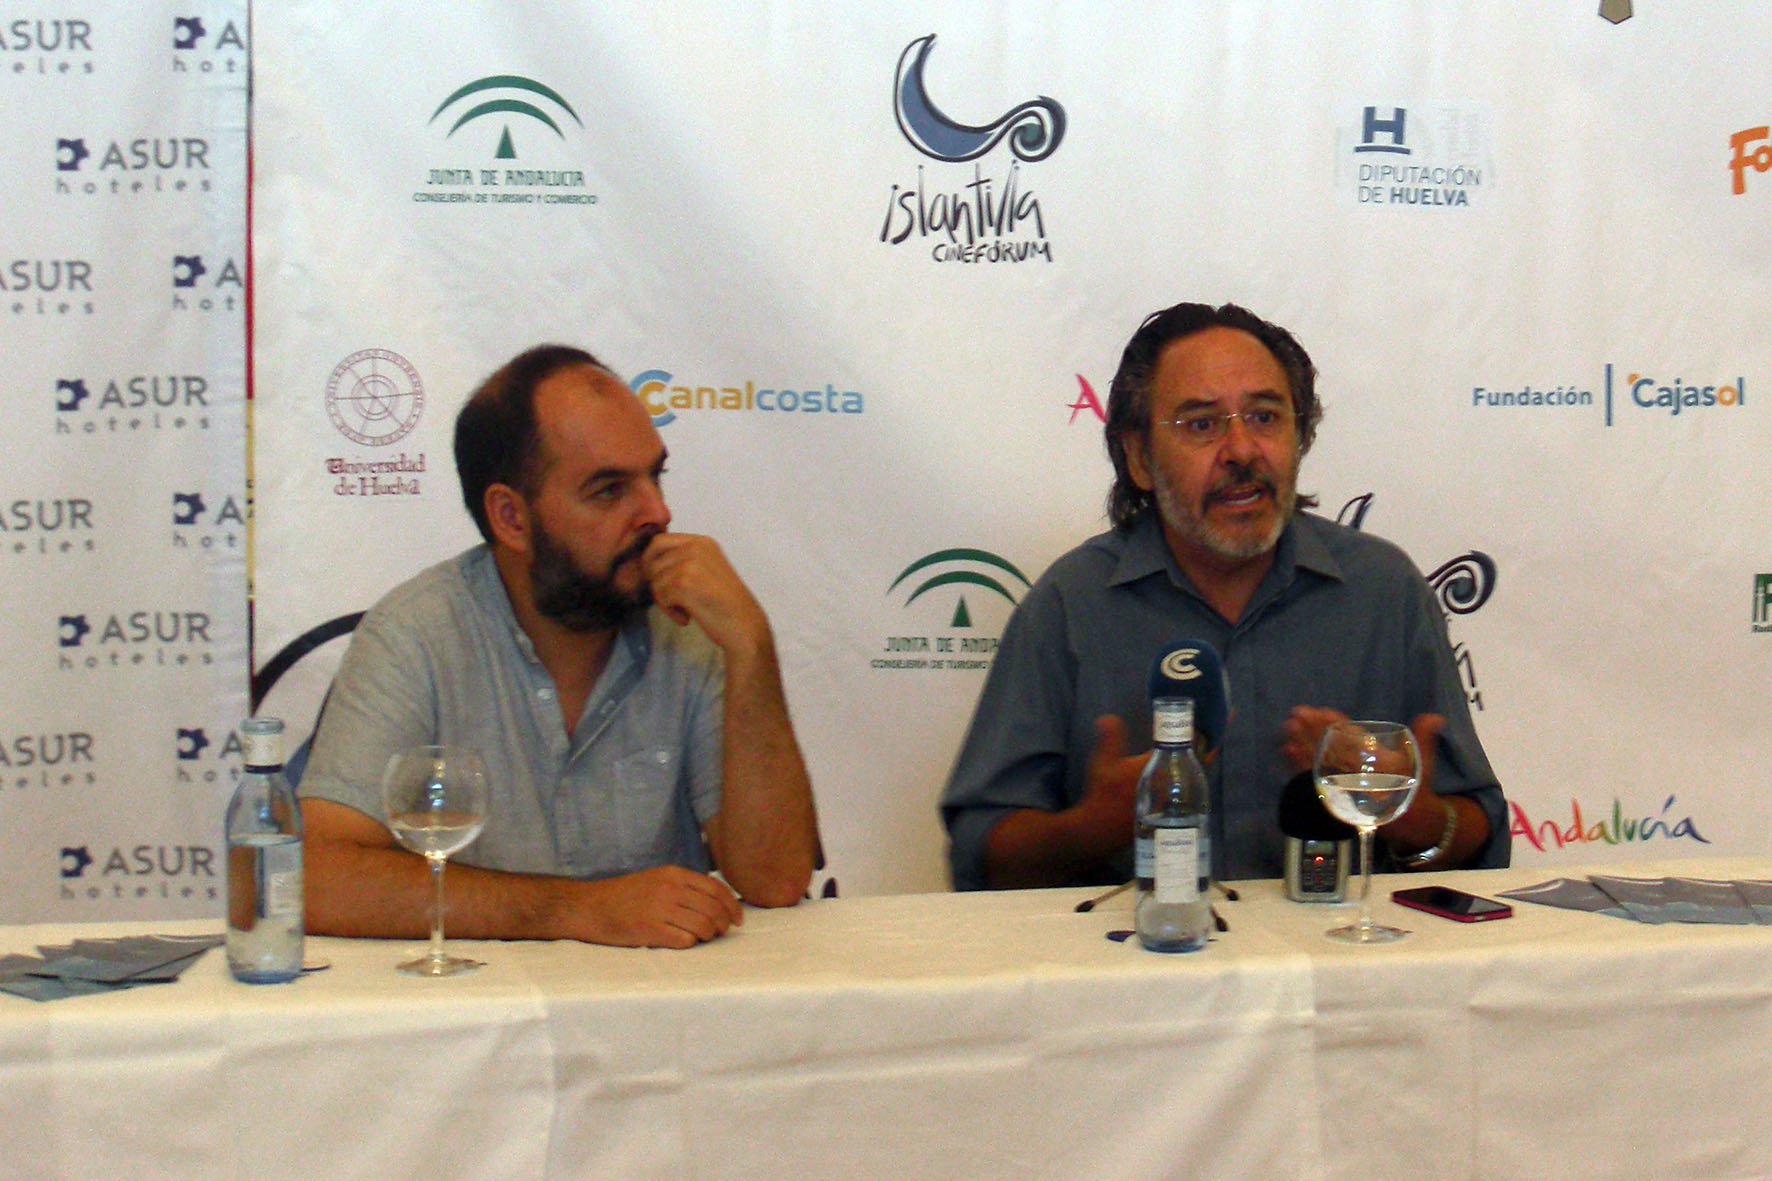 Santiago Ramos, Premio 'Luis Ciges' en el Festival de Islantilla